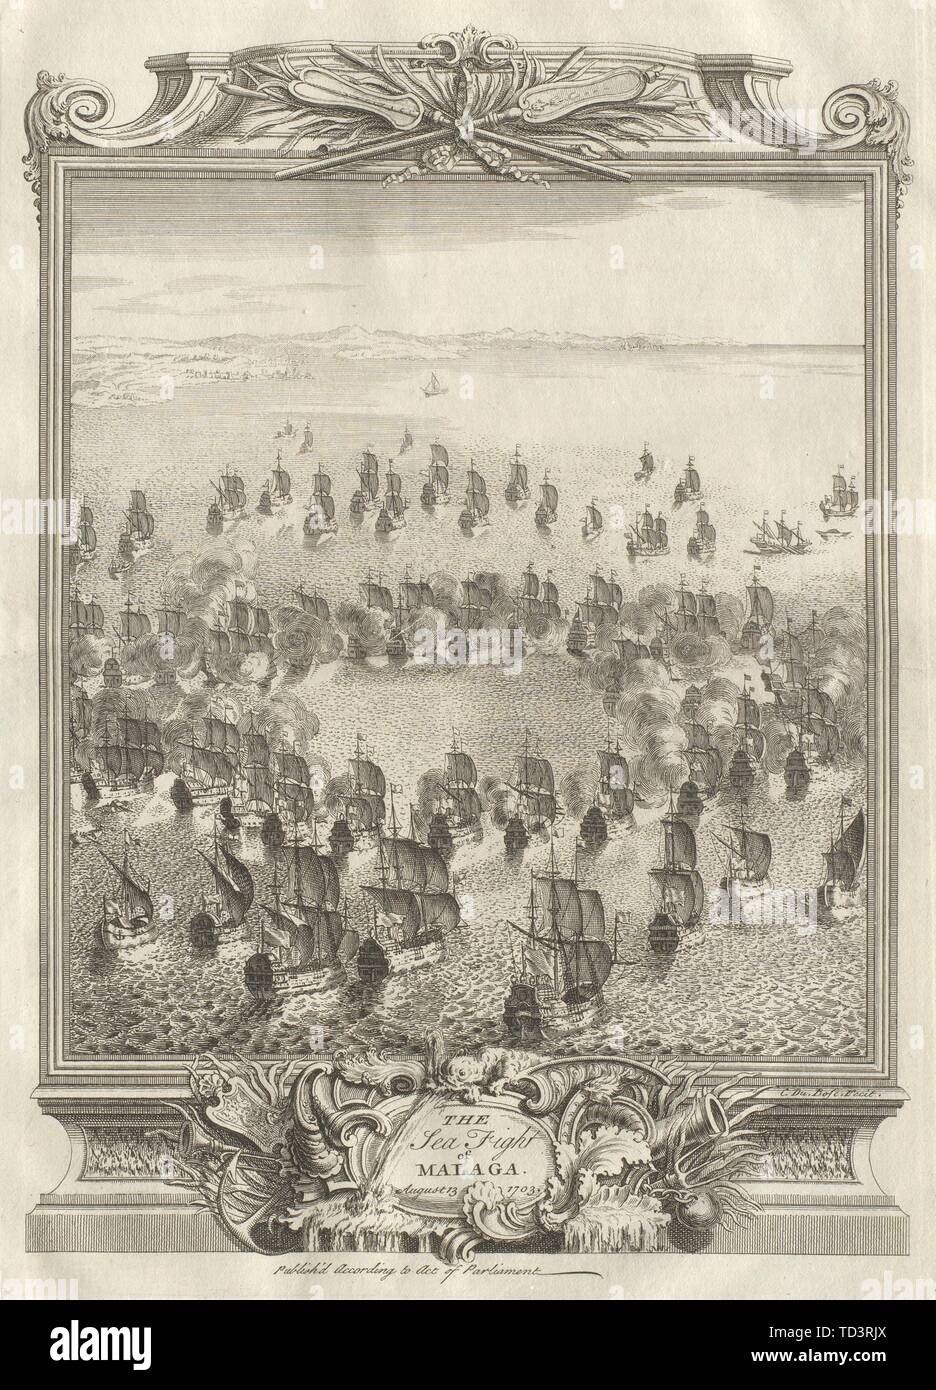 Il mare la lotta di Malaga il 13 agosto 1703. Spagna 1736 antica immagine di stampa Foto Stock